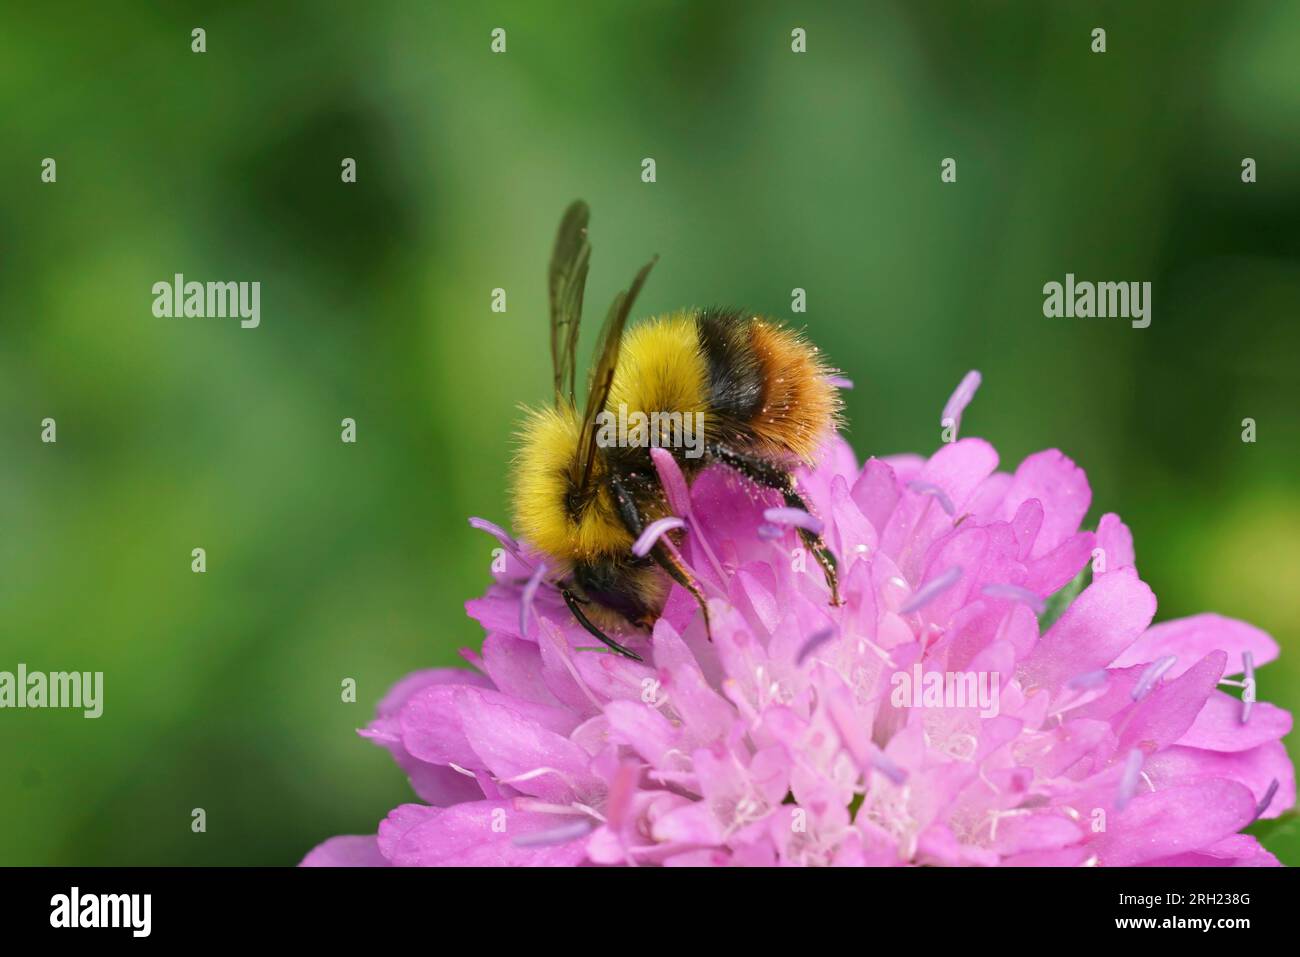 Natürliche Nahaufnahme auf einer farbenfrohen gelben und orangefarbenen flauschigen frühen Bumble-Bee, Bombus pratorum in einer pinkfarbenen Knautia-Blume Stockfoto